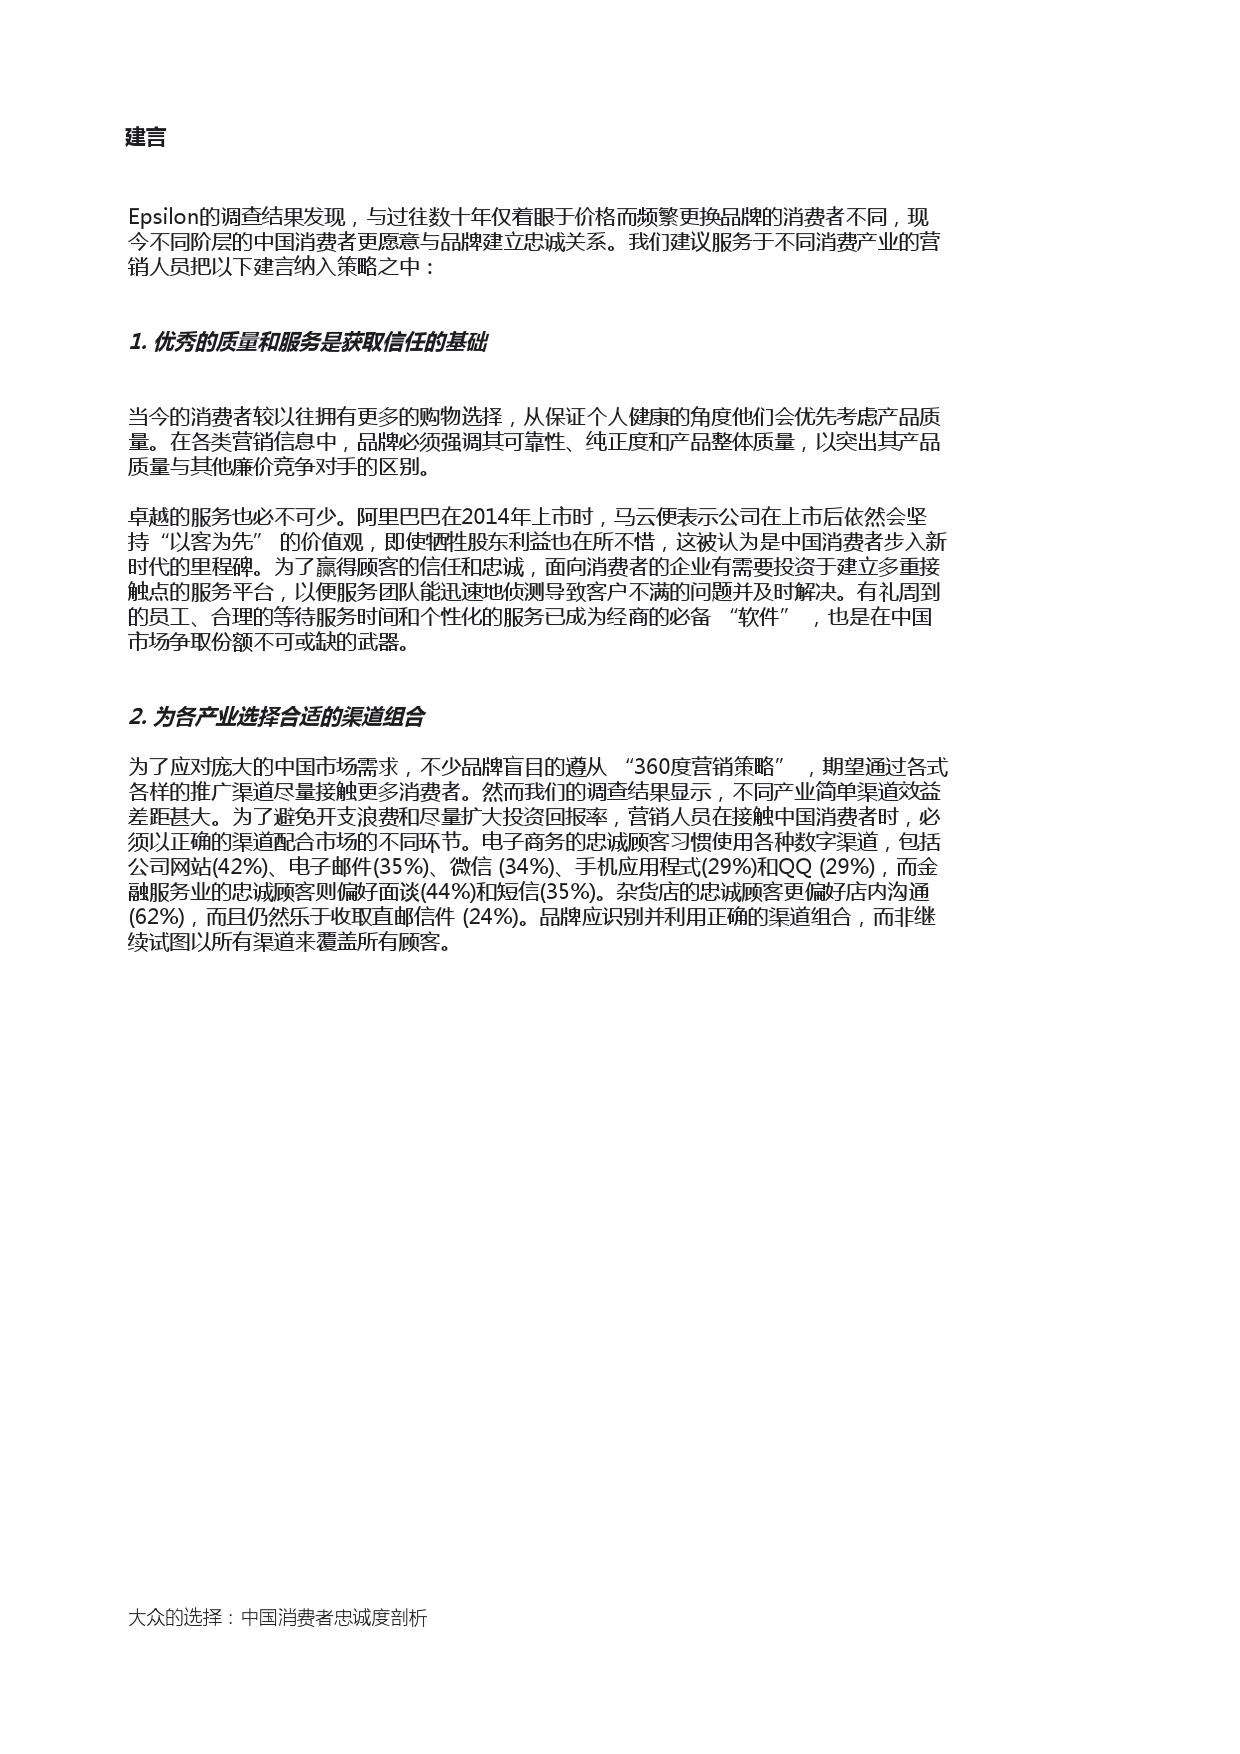 Epsilon_China_Loyalty_Study_report_CN_000017